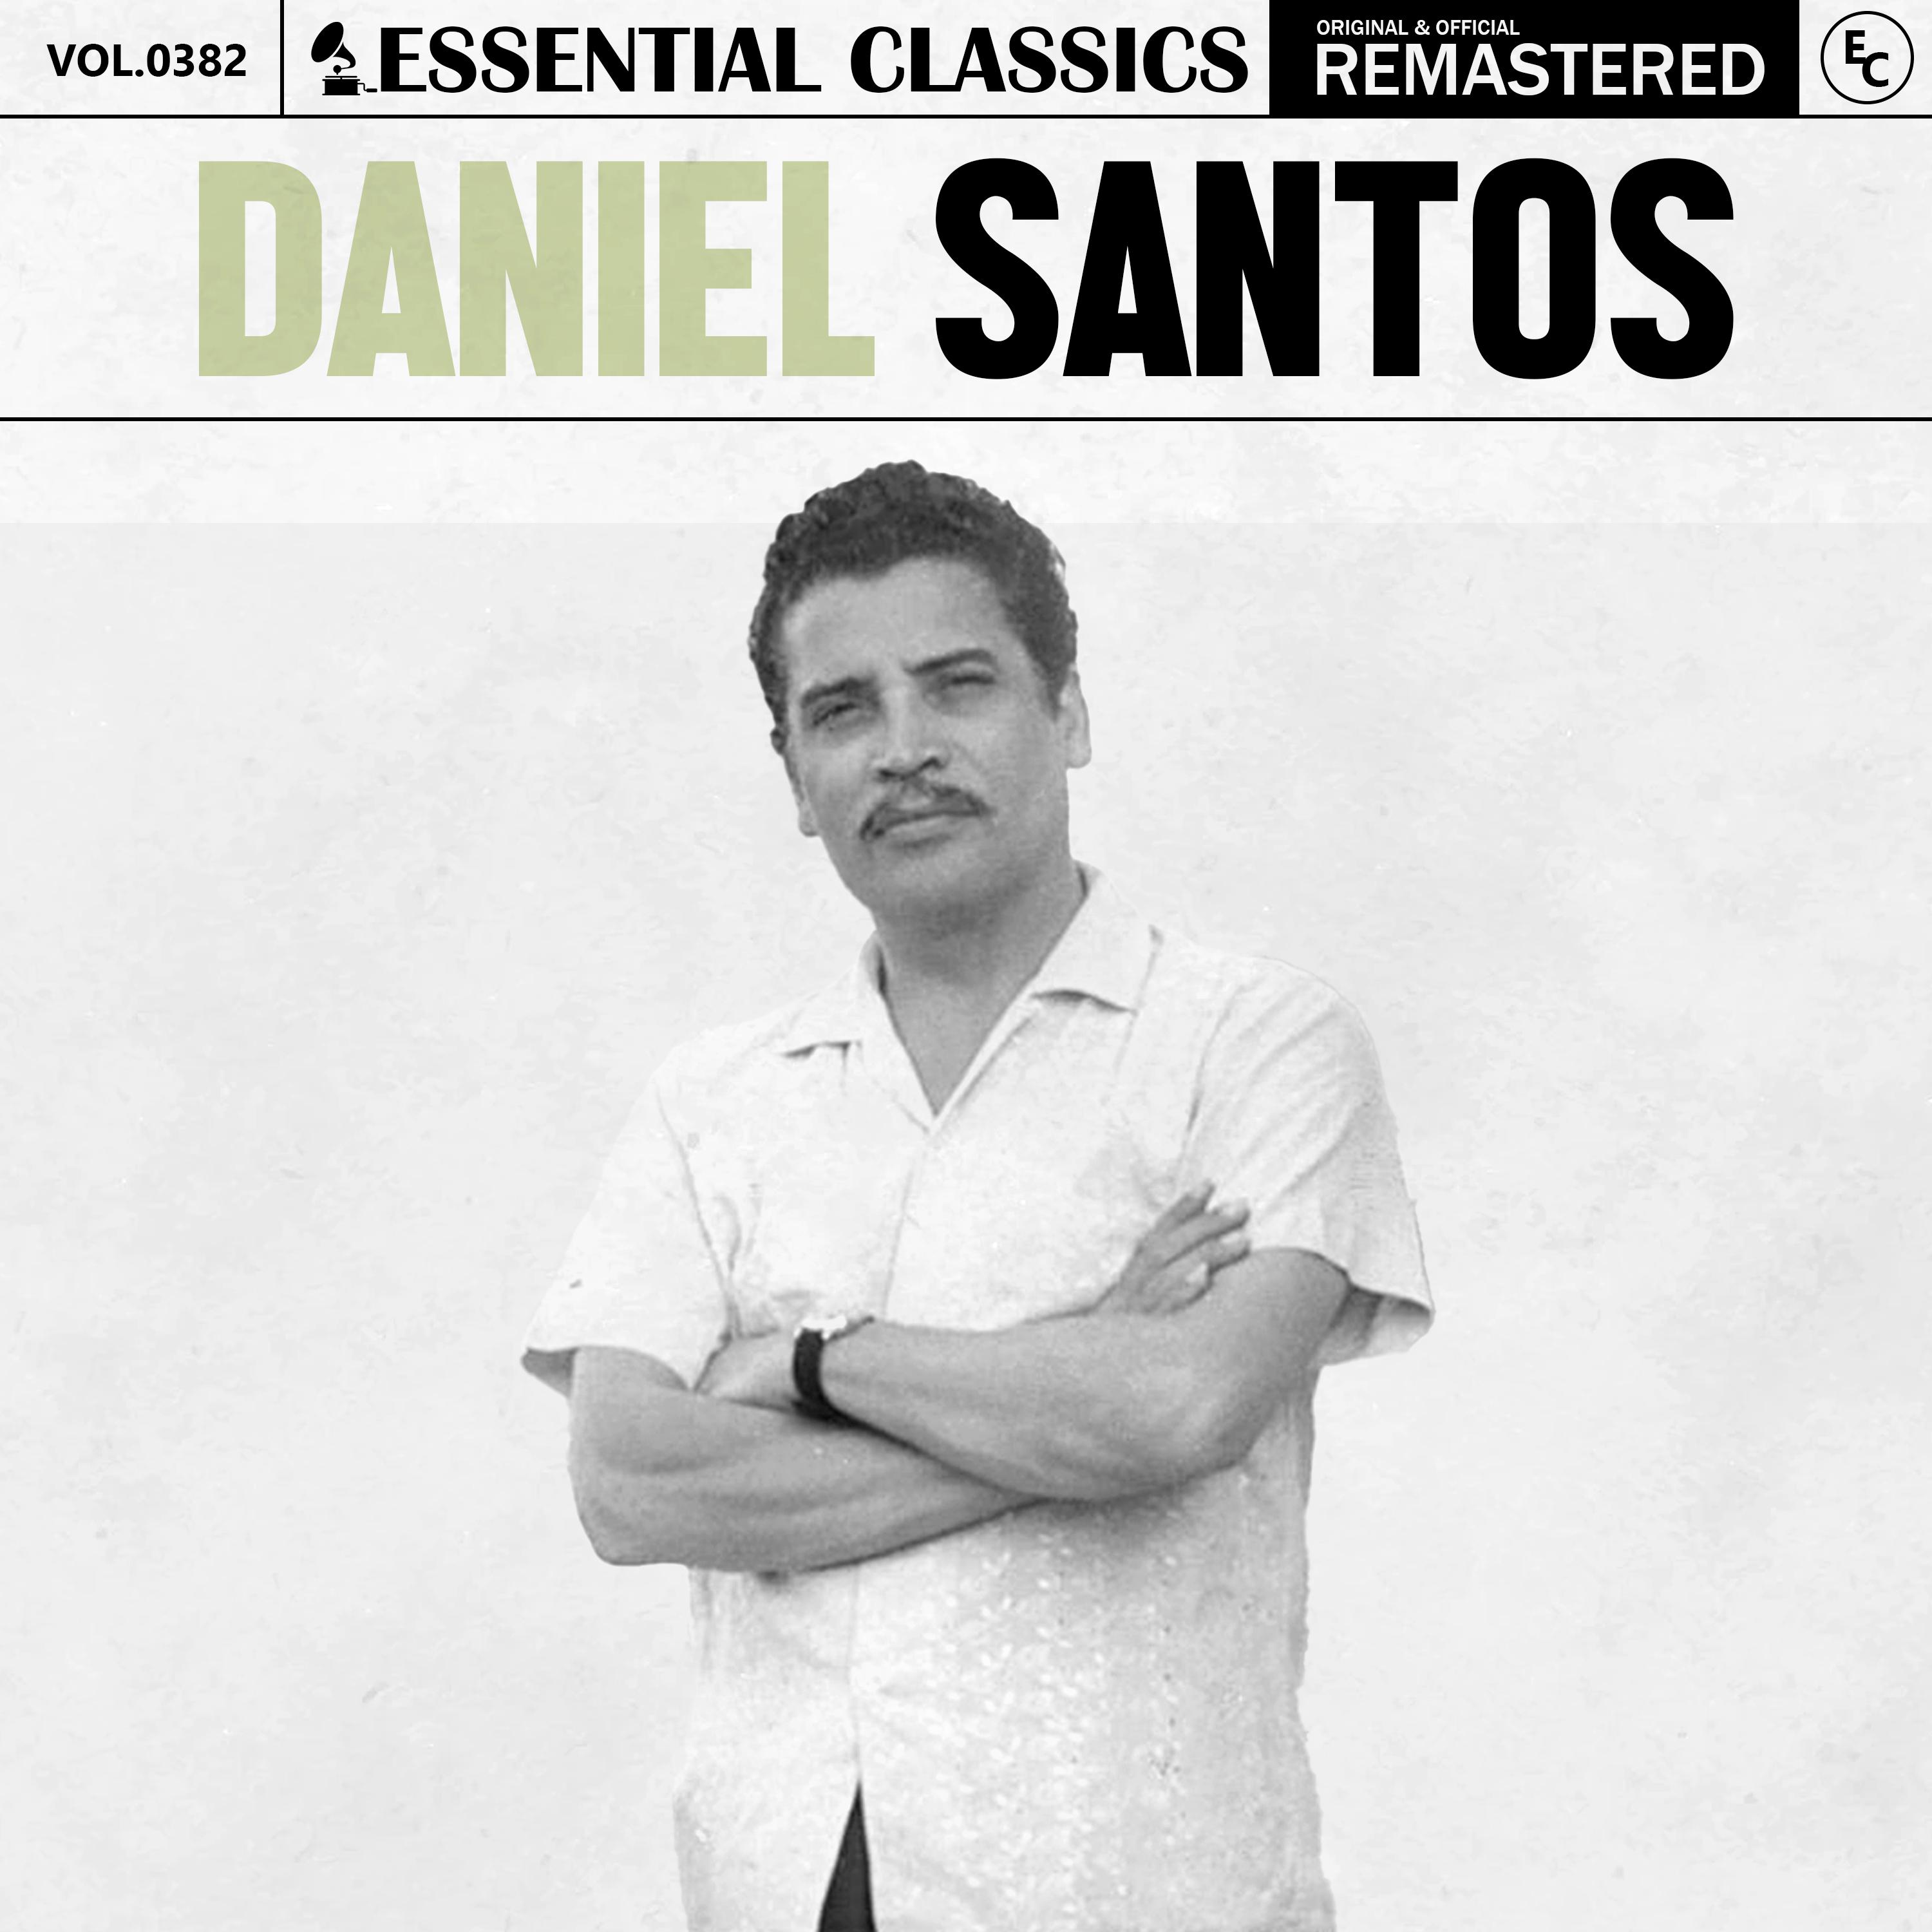 Daniel Santos - De Cigarro en Cigarro